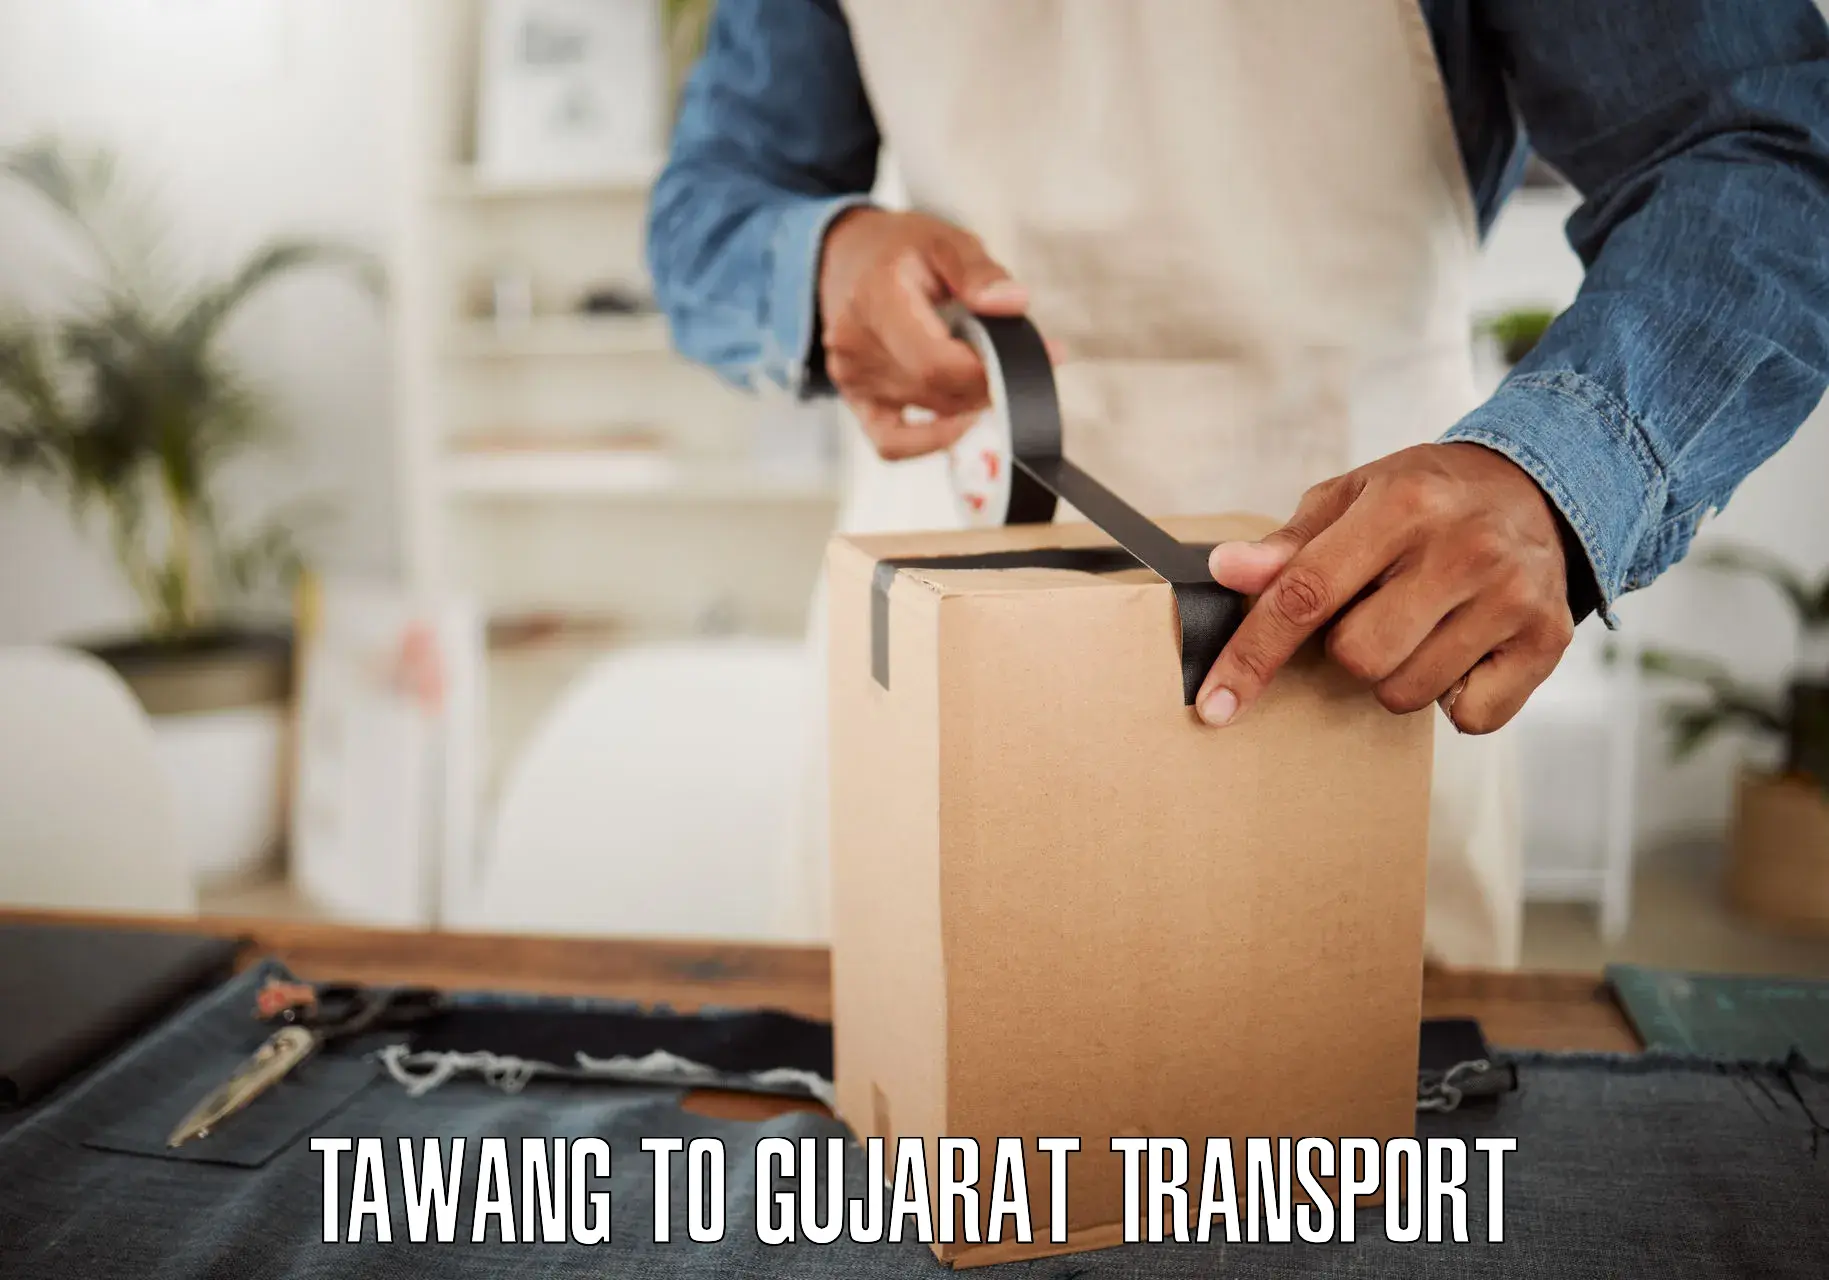 Cycle transportation service Tawang to Gandhinagar